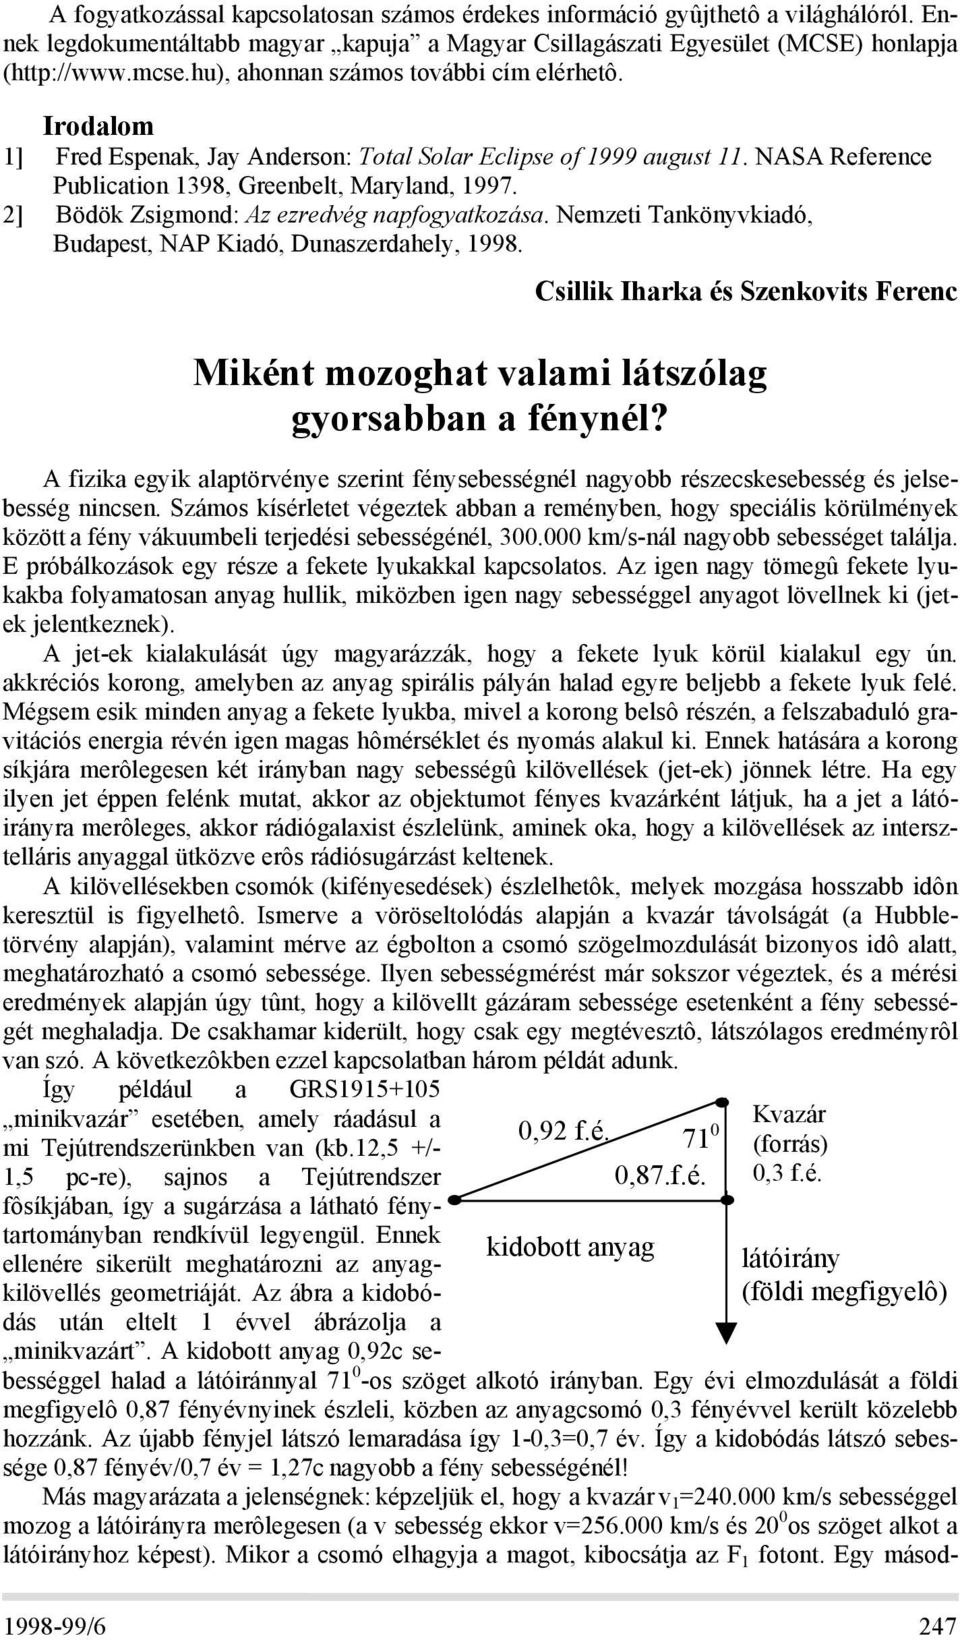 2] Bödök Zsigmond: Az ezredvég napfogyatkozása. Nemzeti Tankönyvkiadó, Budapest, NAP Kiadó, Dunaszerdahely, 1998.